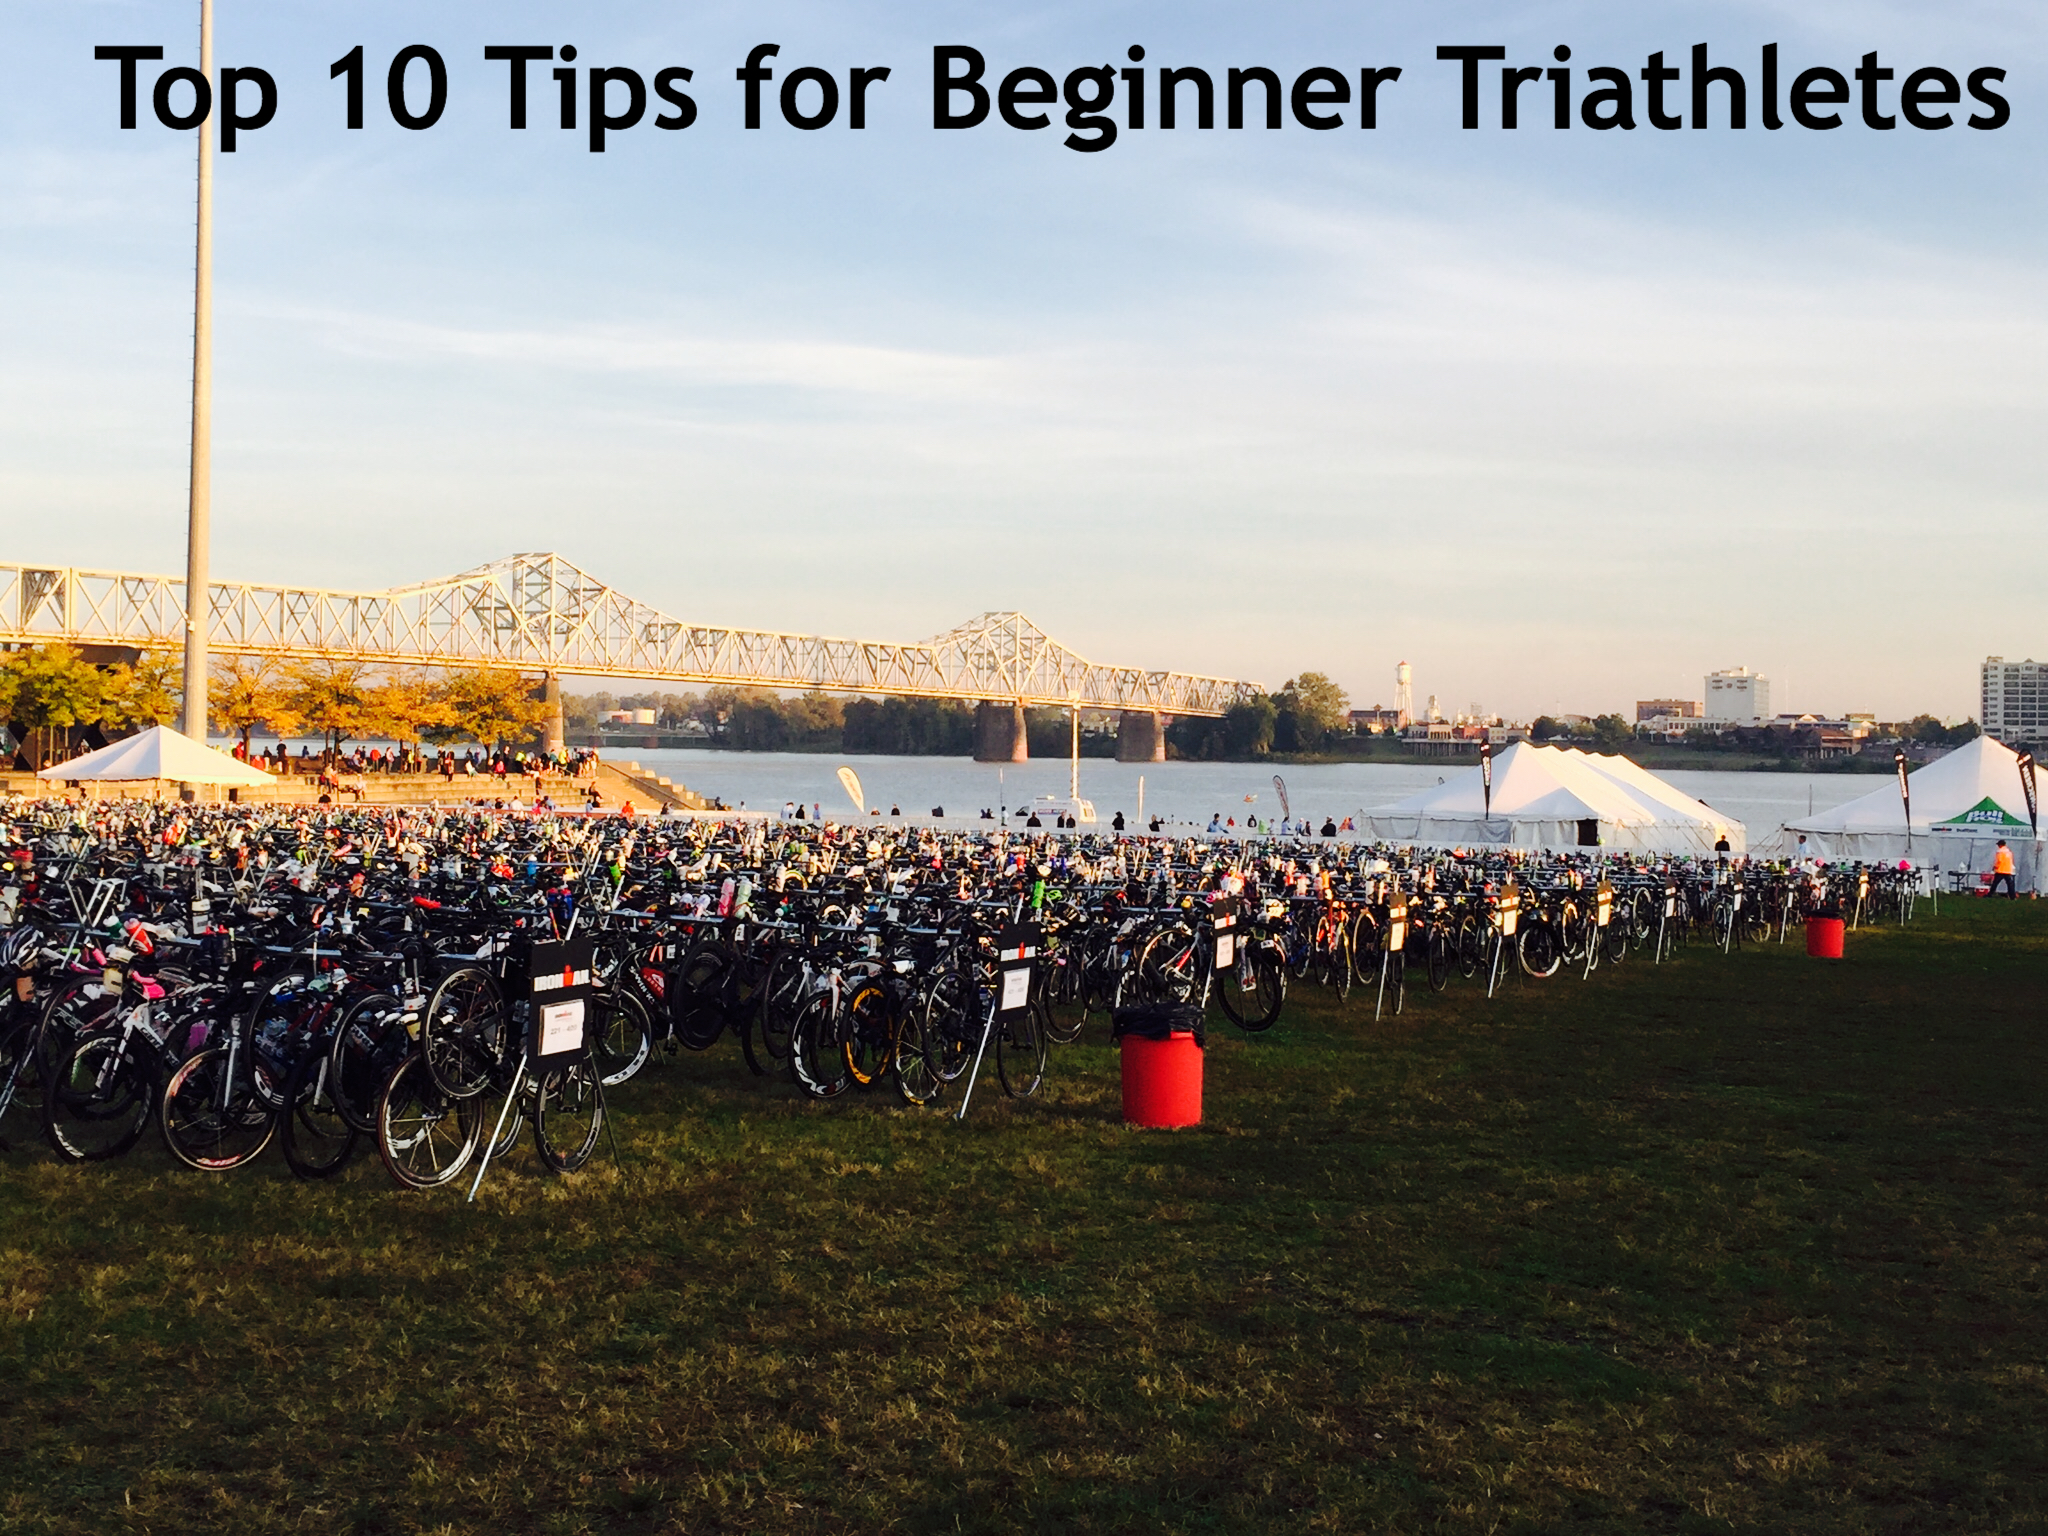 Top 10 Tips for Beginner Triathletes